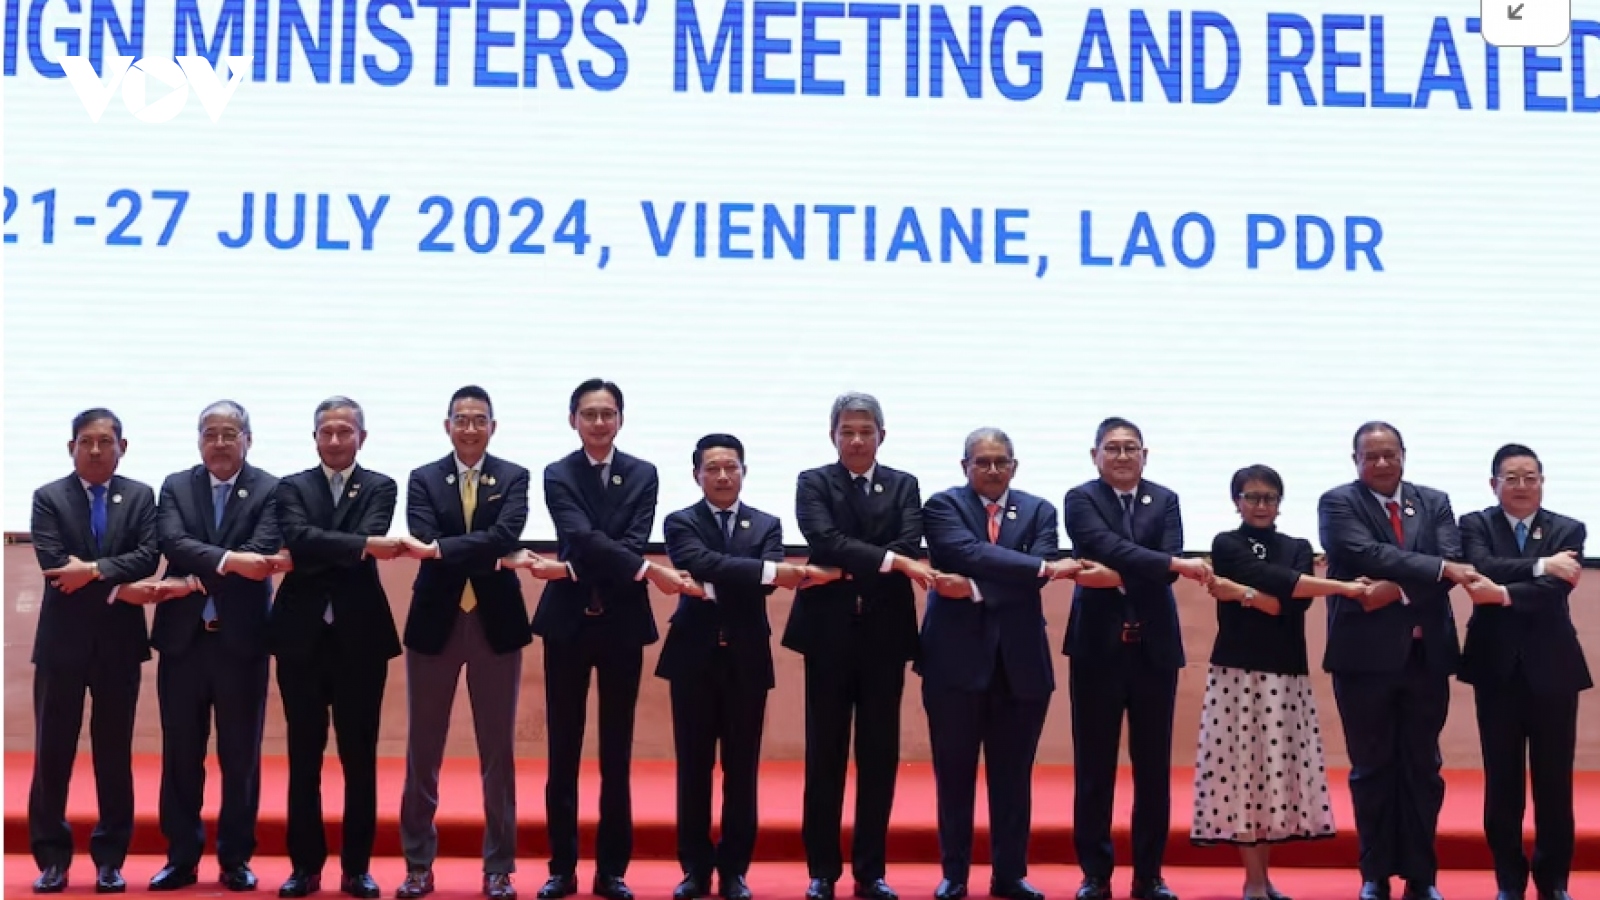 Hội nghị Bộ trưởng Ngoại giao ASEAN 57: Tăng cường kết nối và tự cường ASEAN